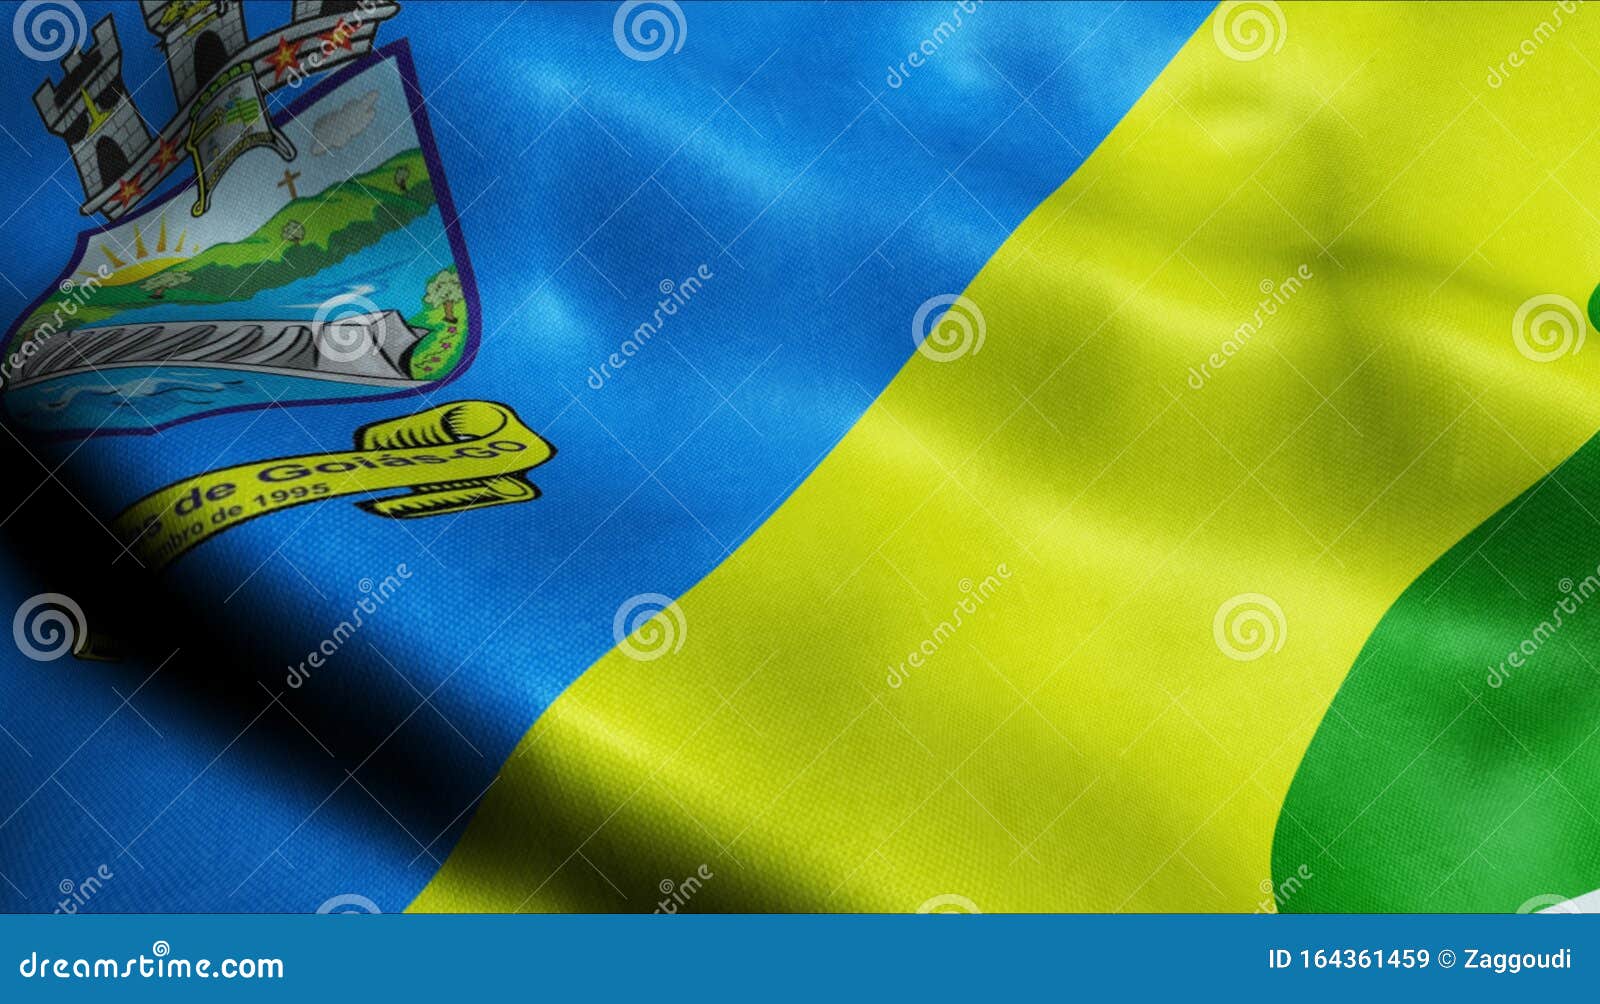 3d waving brazil city flag of aguas lindas de goias closeup view